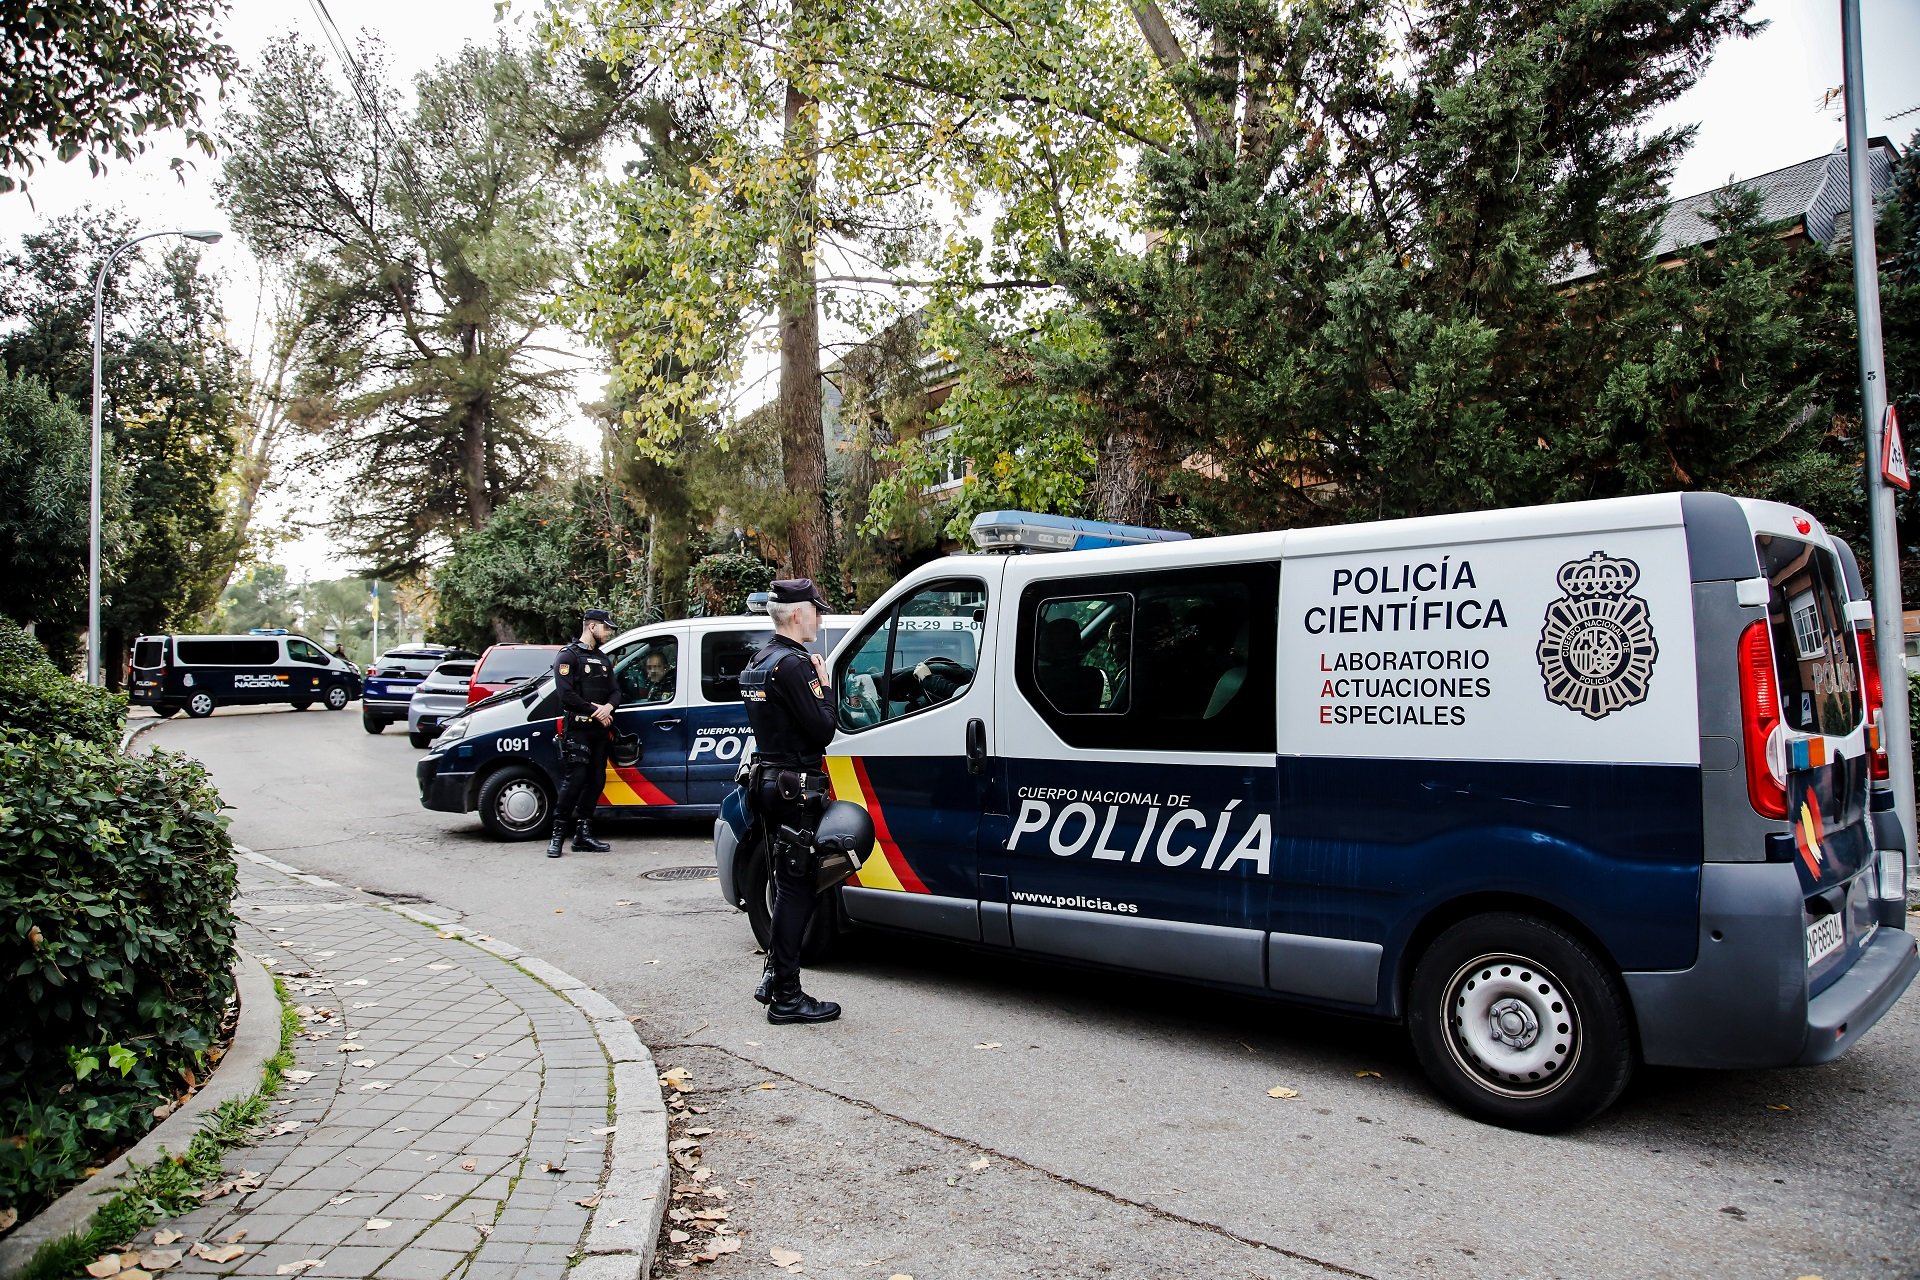 Agents russos van enviar les cartes bomba a Espanya, segons 'The New York Times'